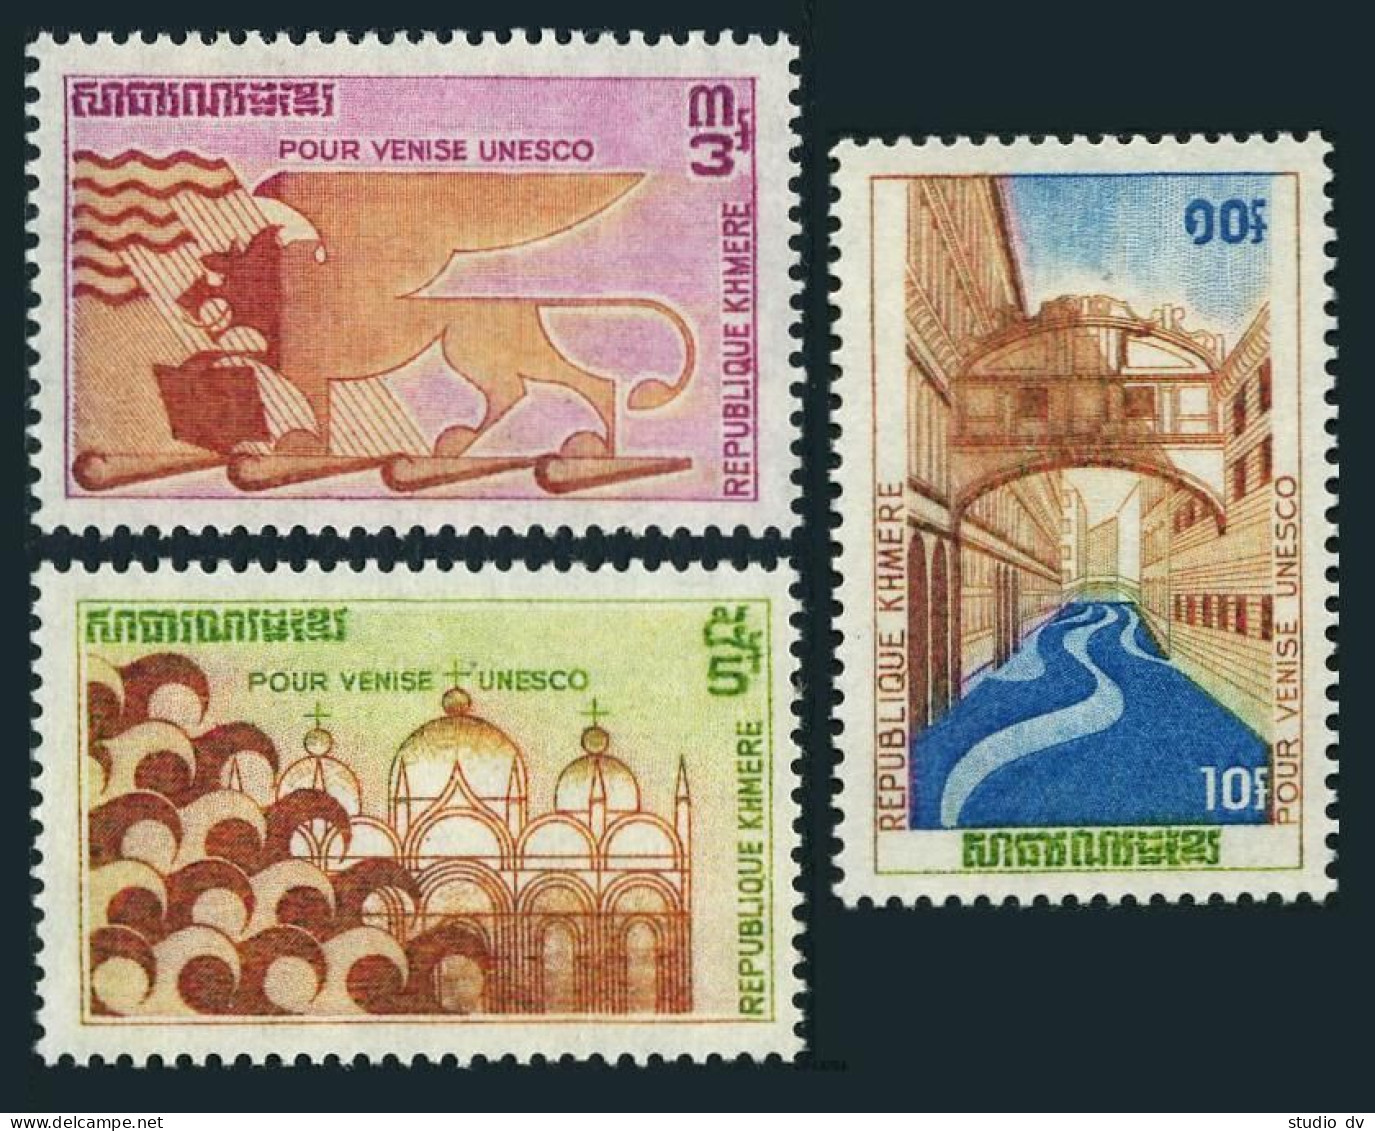 Cambodia 275-277, MNH. Michel 318-320. UNESCO Campaign To Save Venice, 1972. - Cambodja